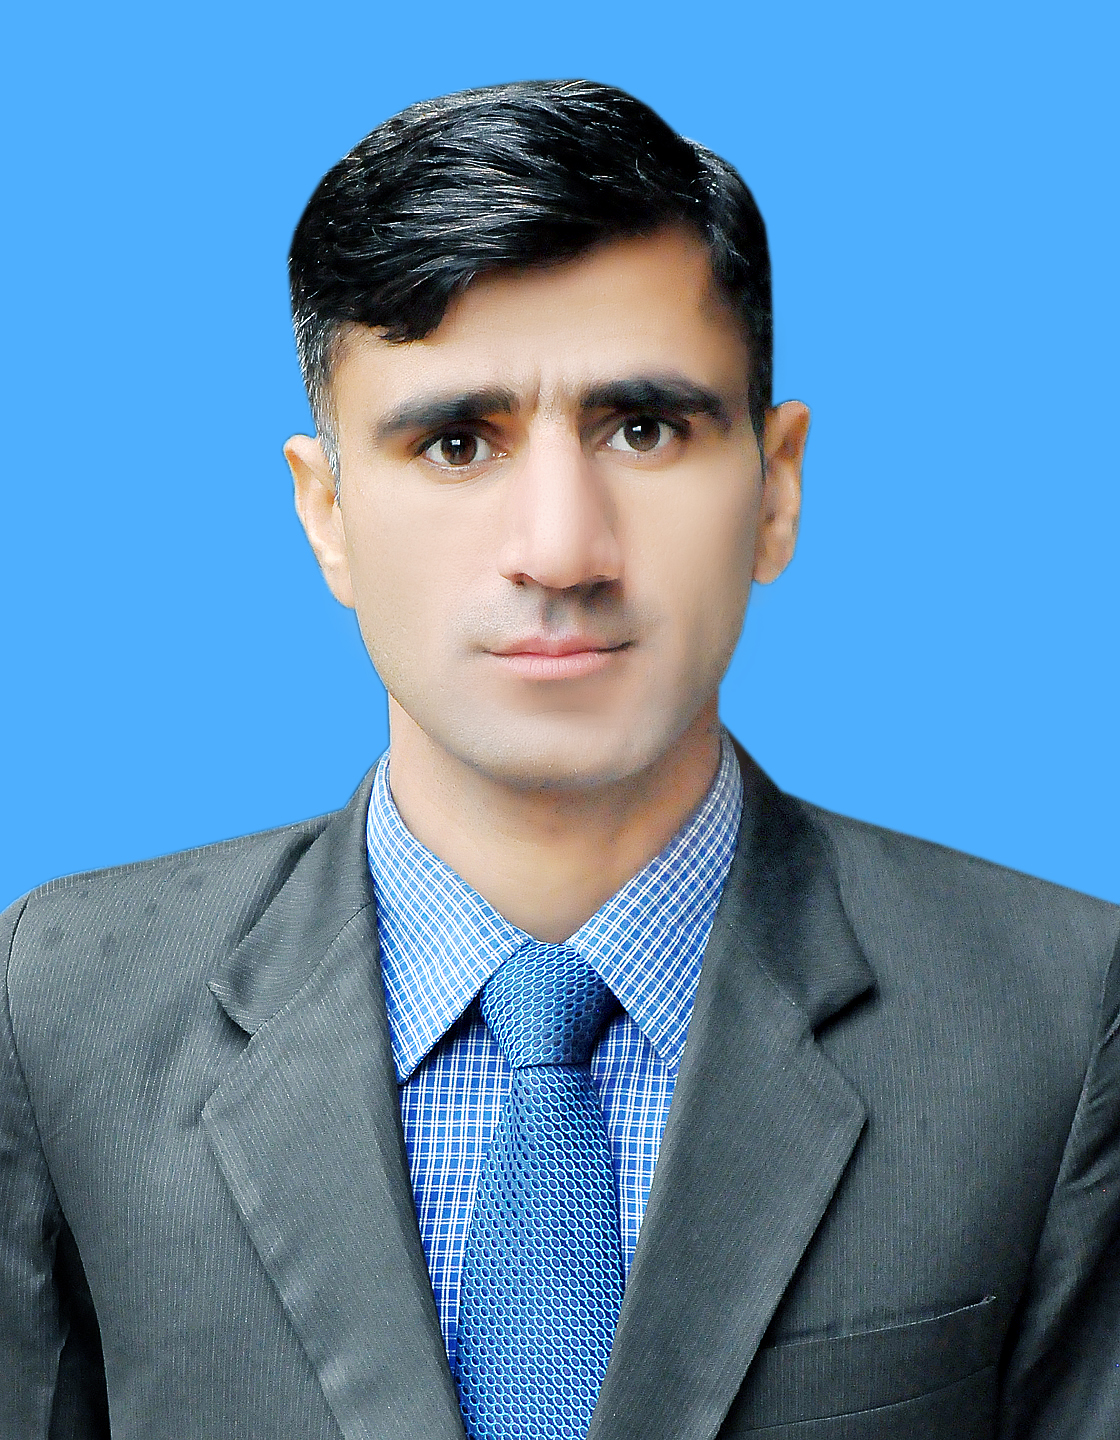 Mr. Hussain Bux Mugheri